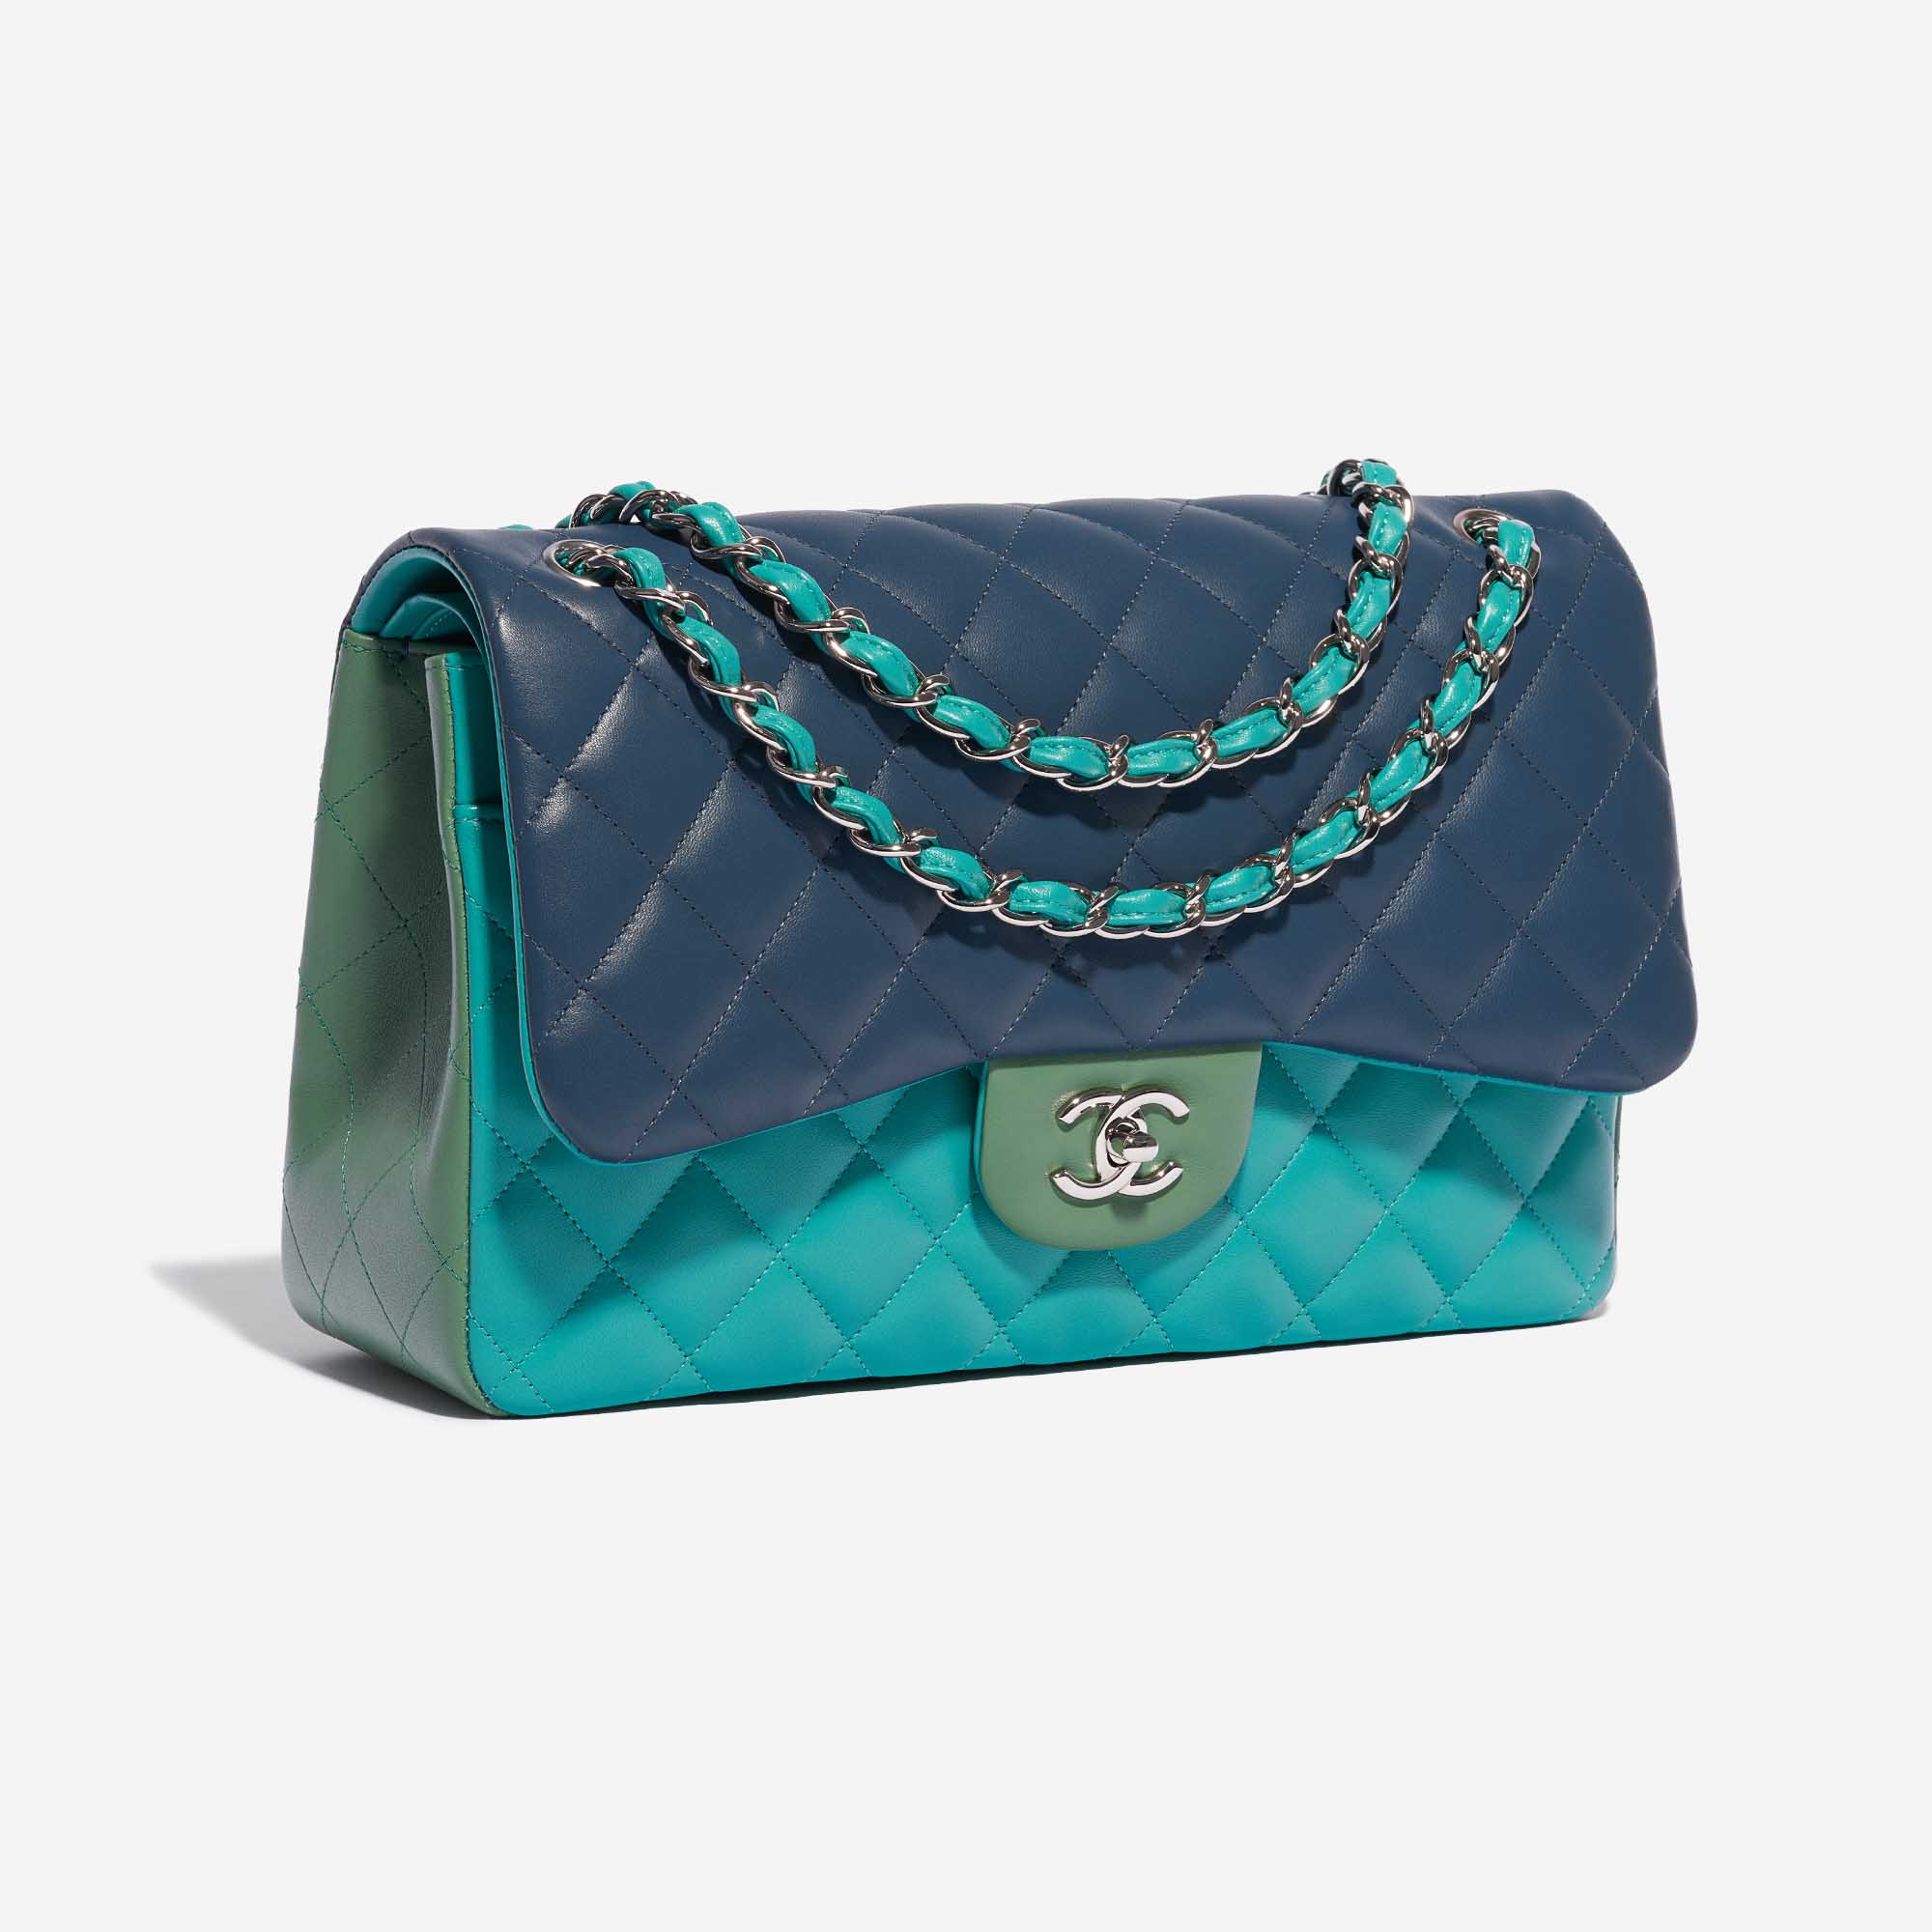 Sac Chanel d'occasion Timeless Jumbo Lamb Green / Turquoise / Blue Blue, Multicolore Side Front | Vendez votre sac de créateur sur Saclab.com